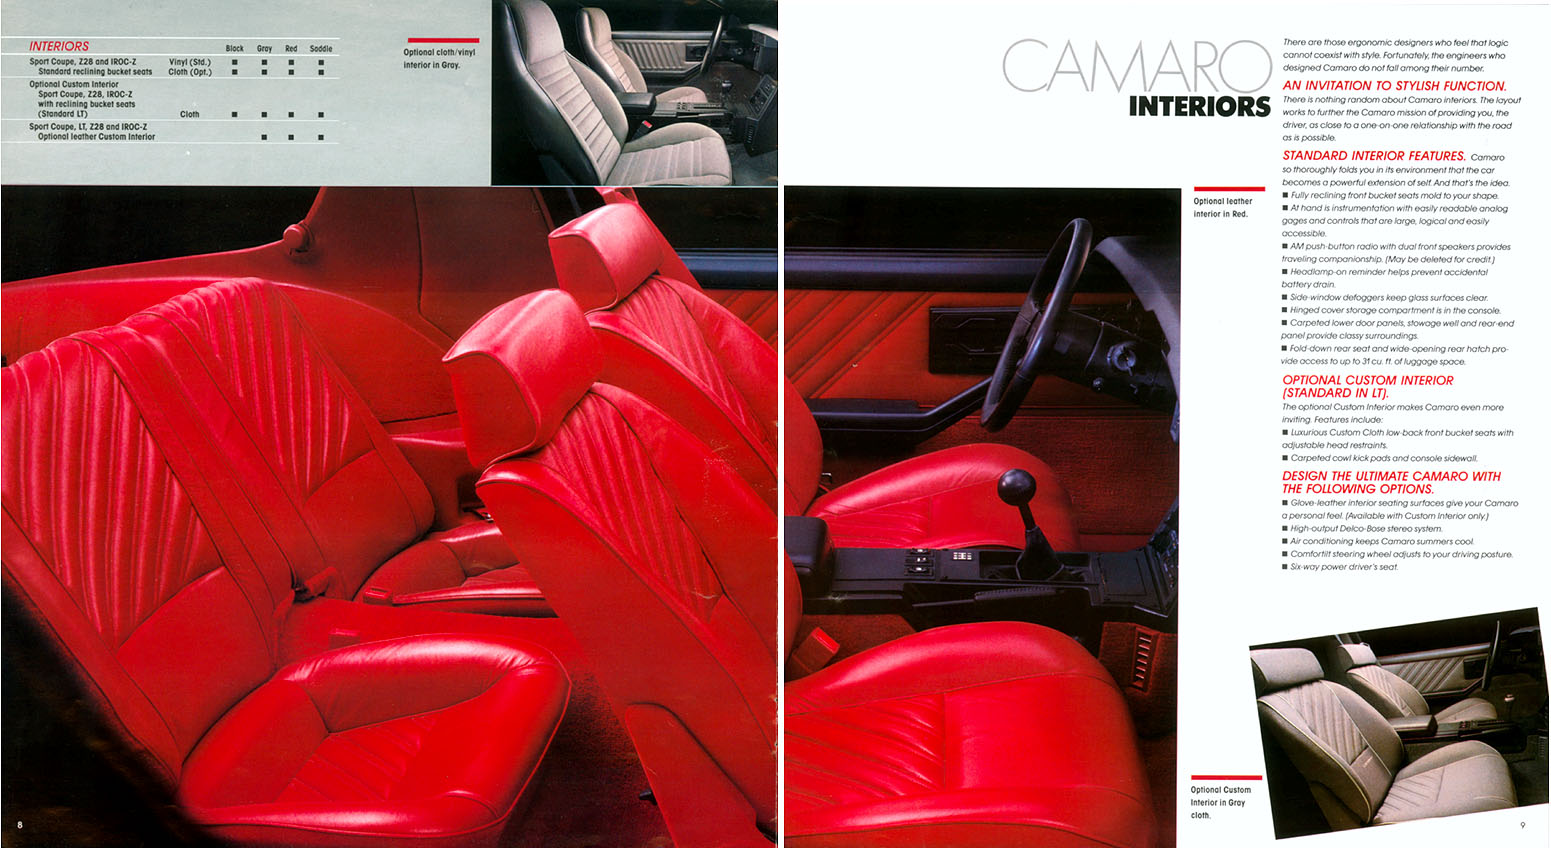 1987 Chev Camaro Brochure Page 6